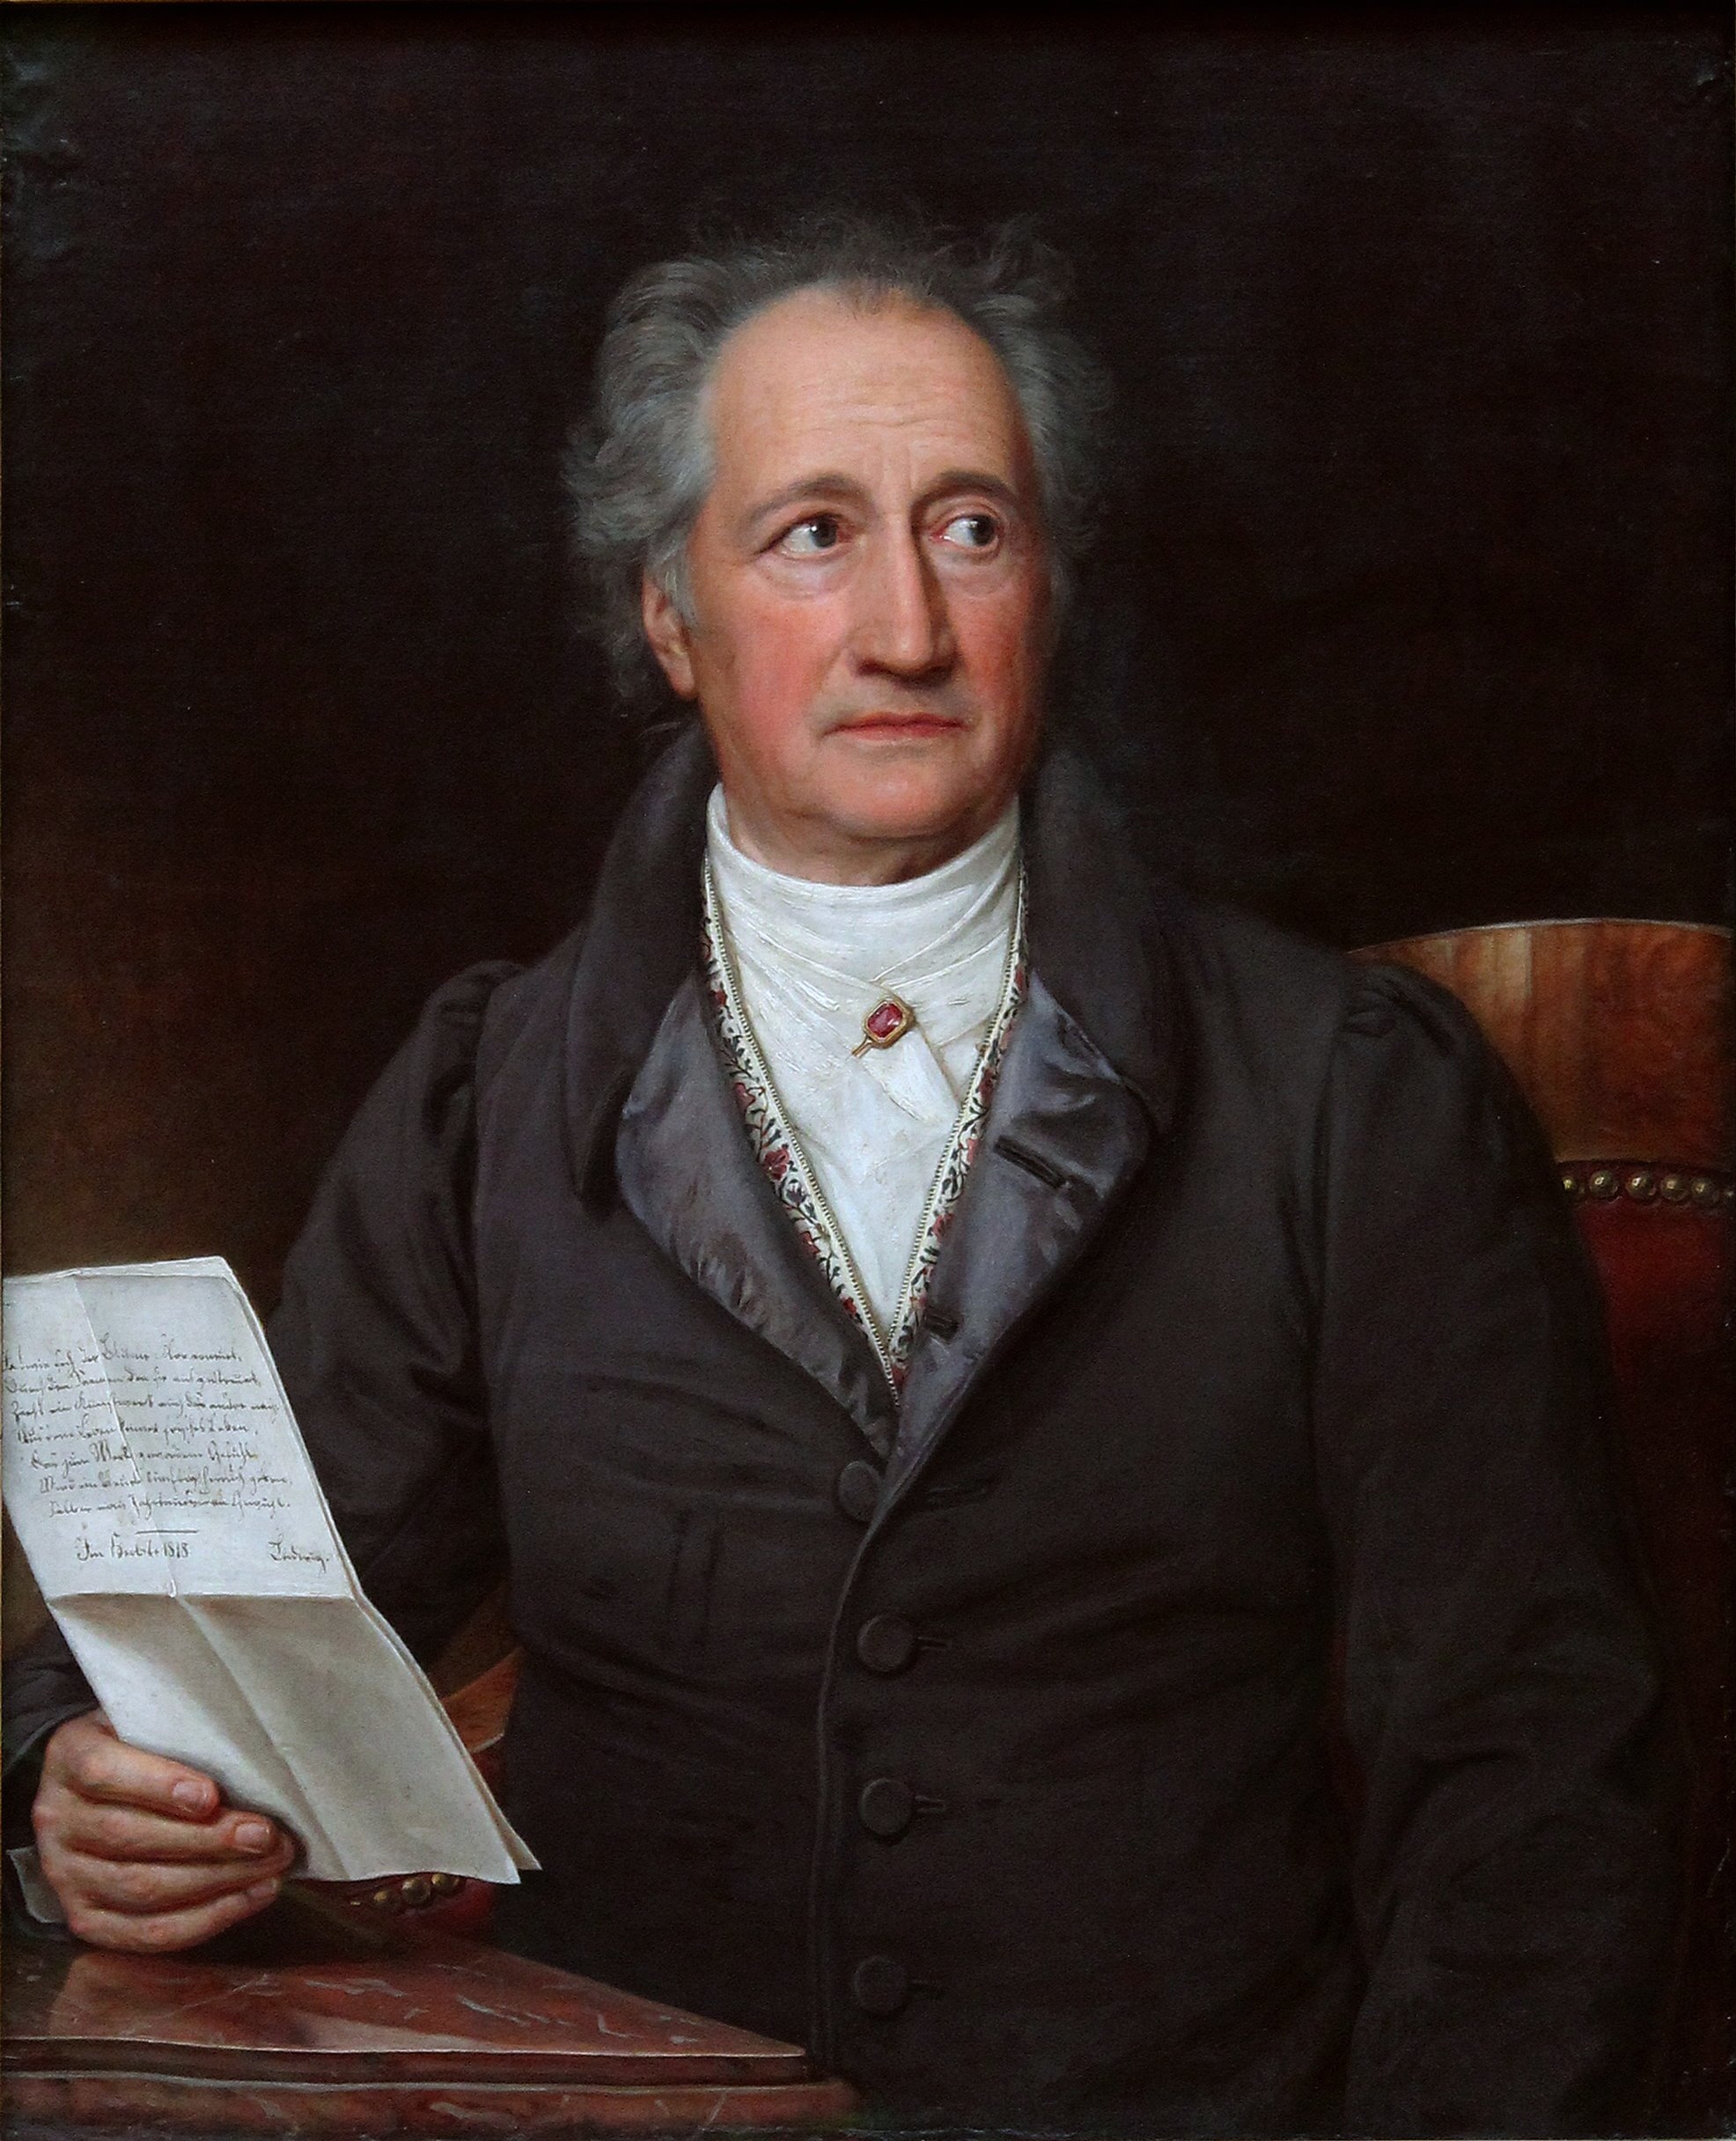 auteur Johann Wolfgang von Goethe de la citation Le grand public pense que les livres, comme les oeufs, gagnent à être consommés frais. C'est pour cette raison qu'il choisit toujours la nouveauté.